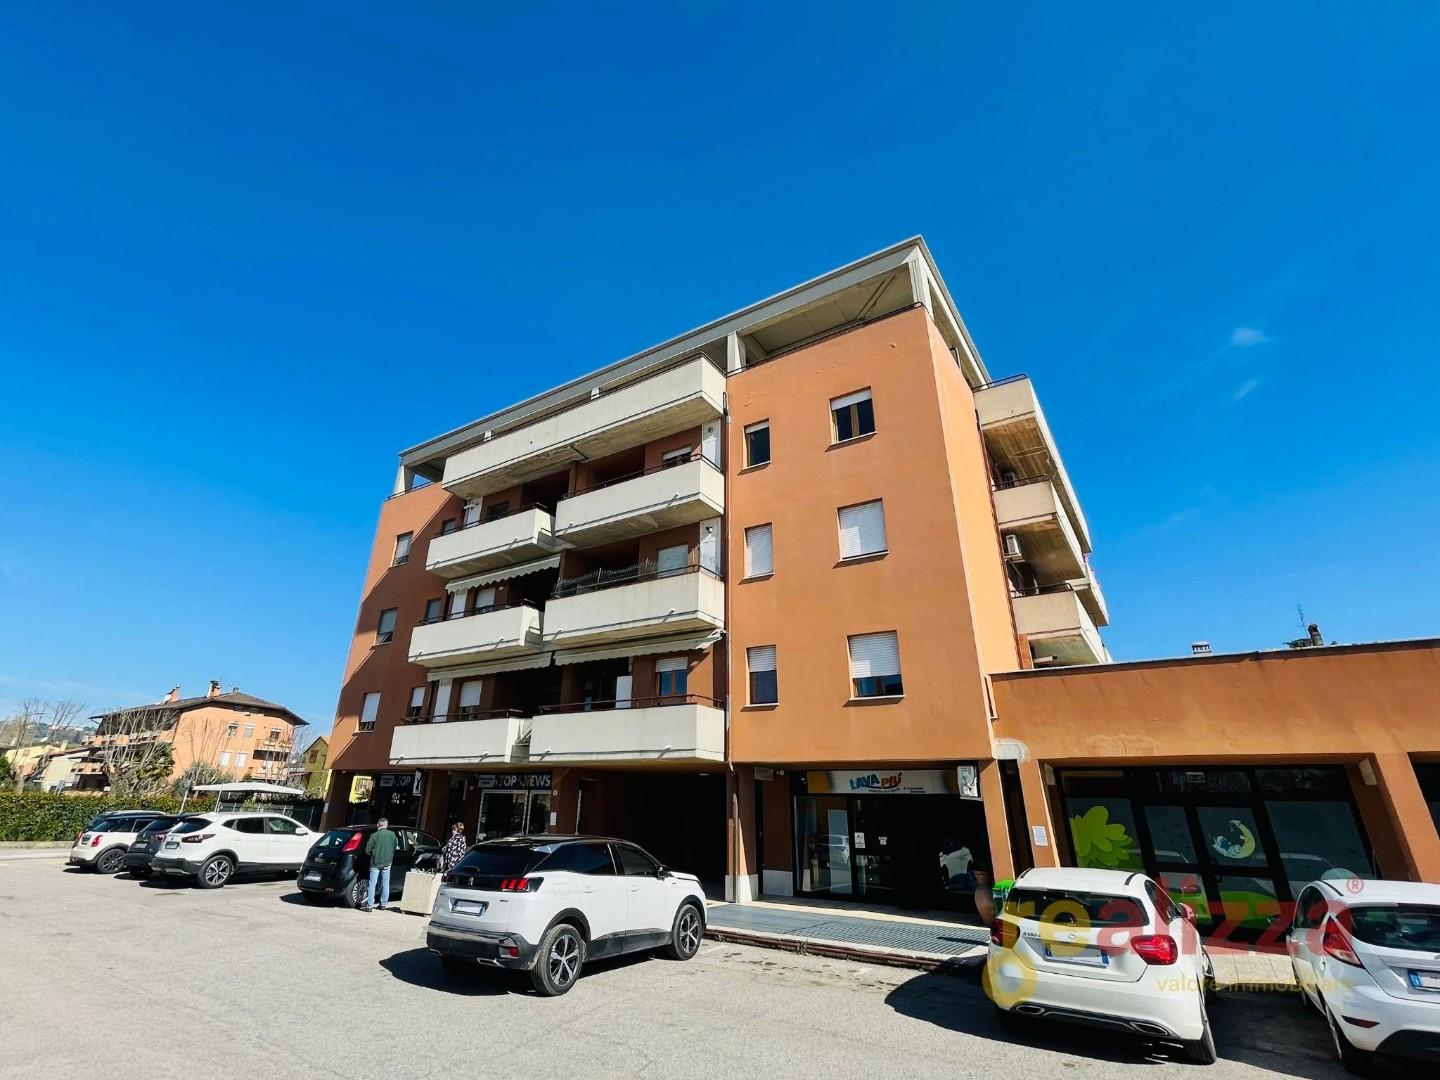 Appartamento in vendita a Perugia, 3 locali, prezzo € 98.000 | PortaleAgenzieImmobiliari.it